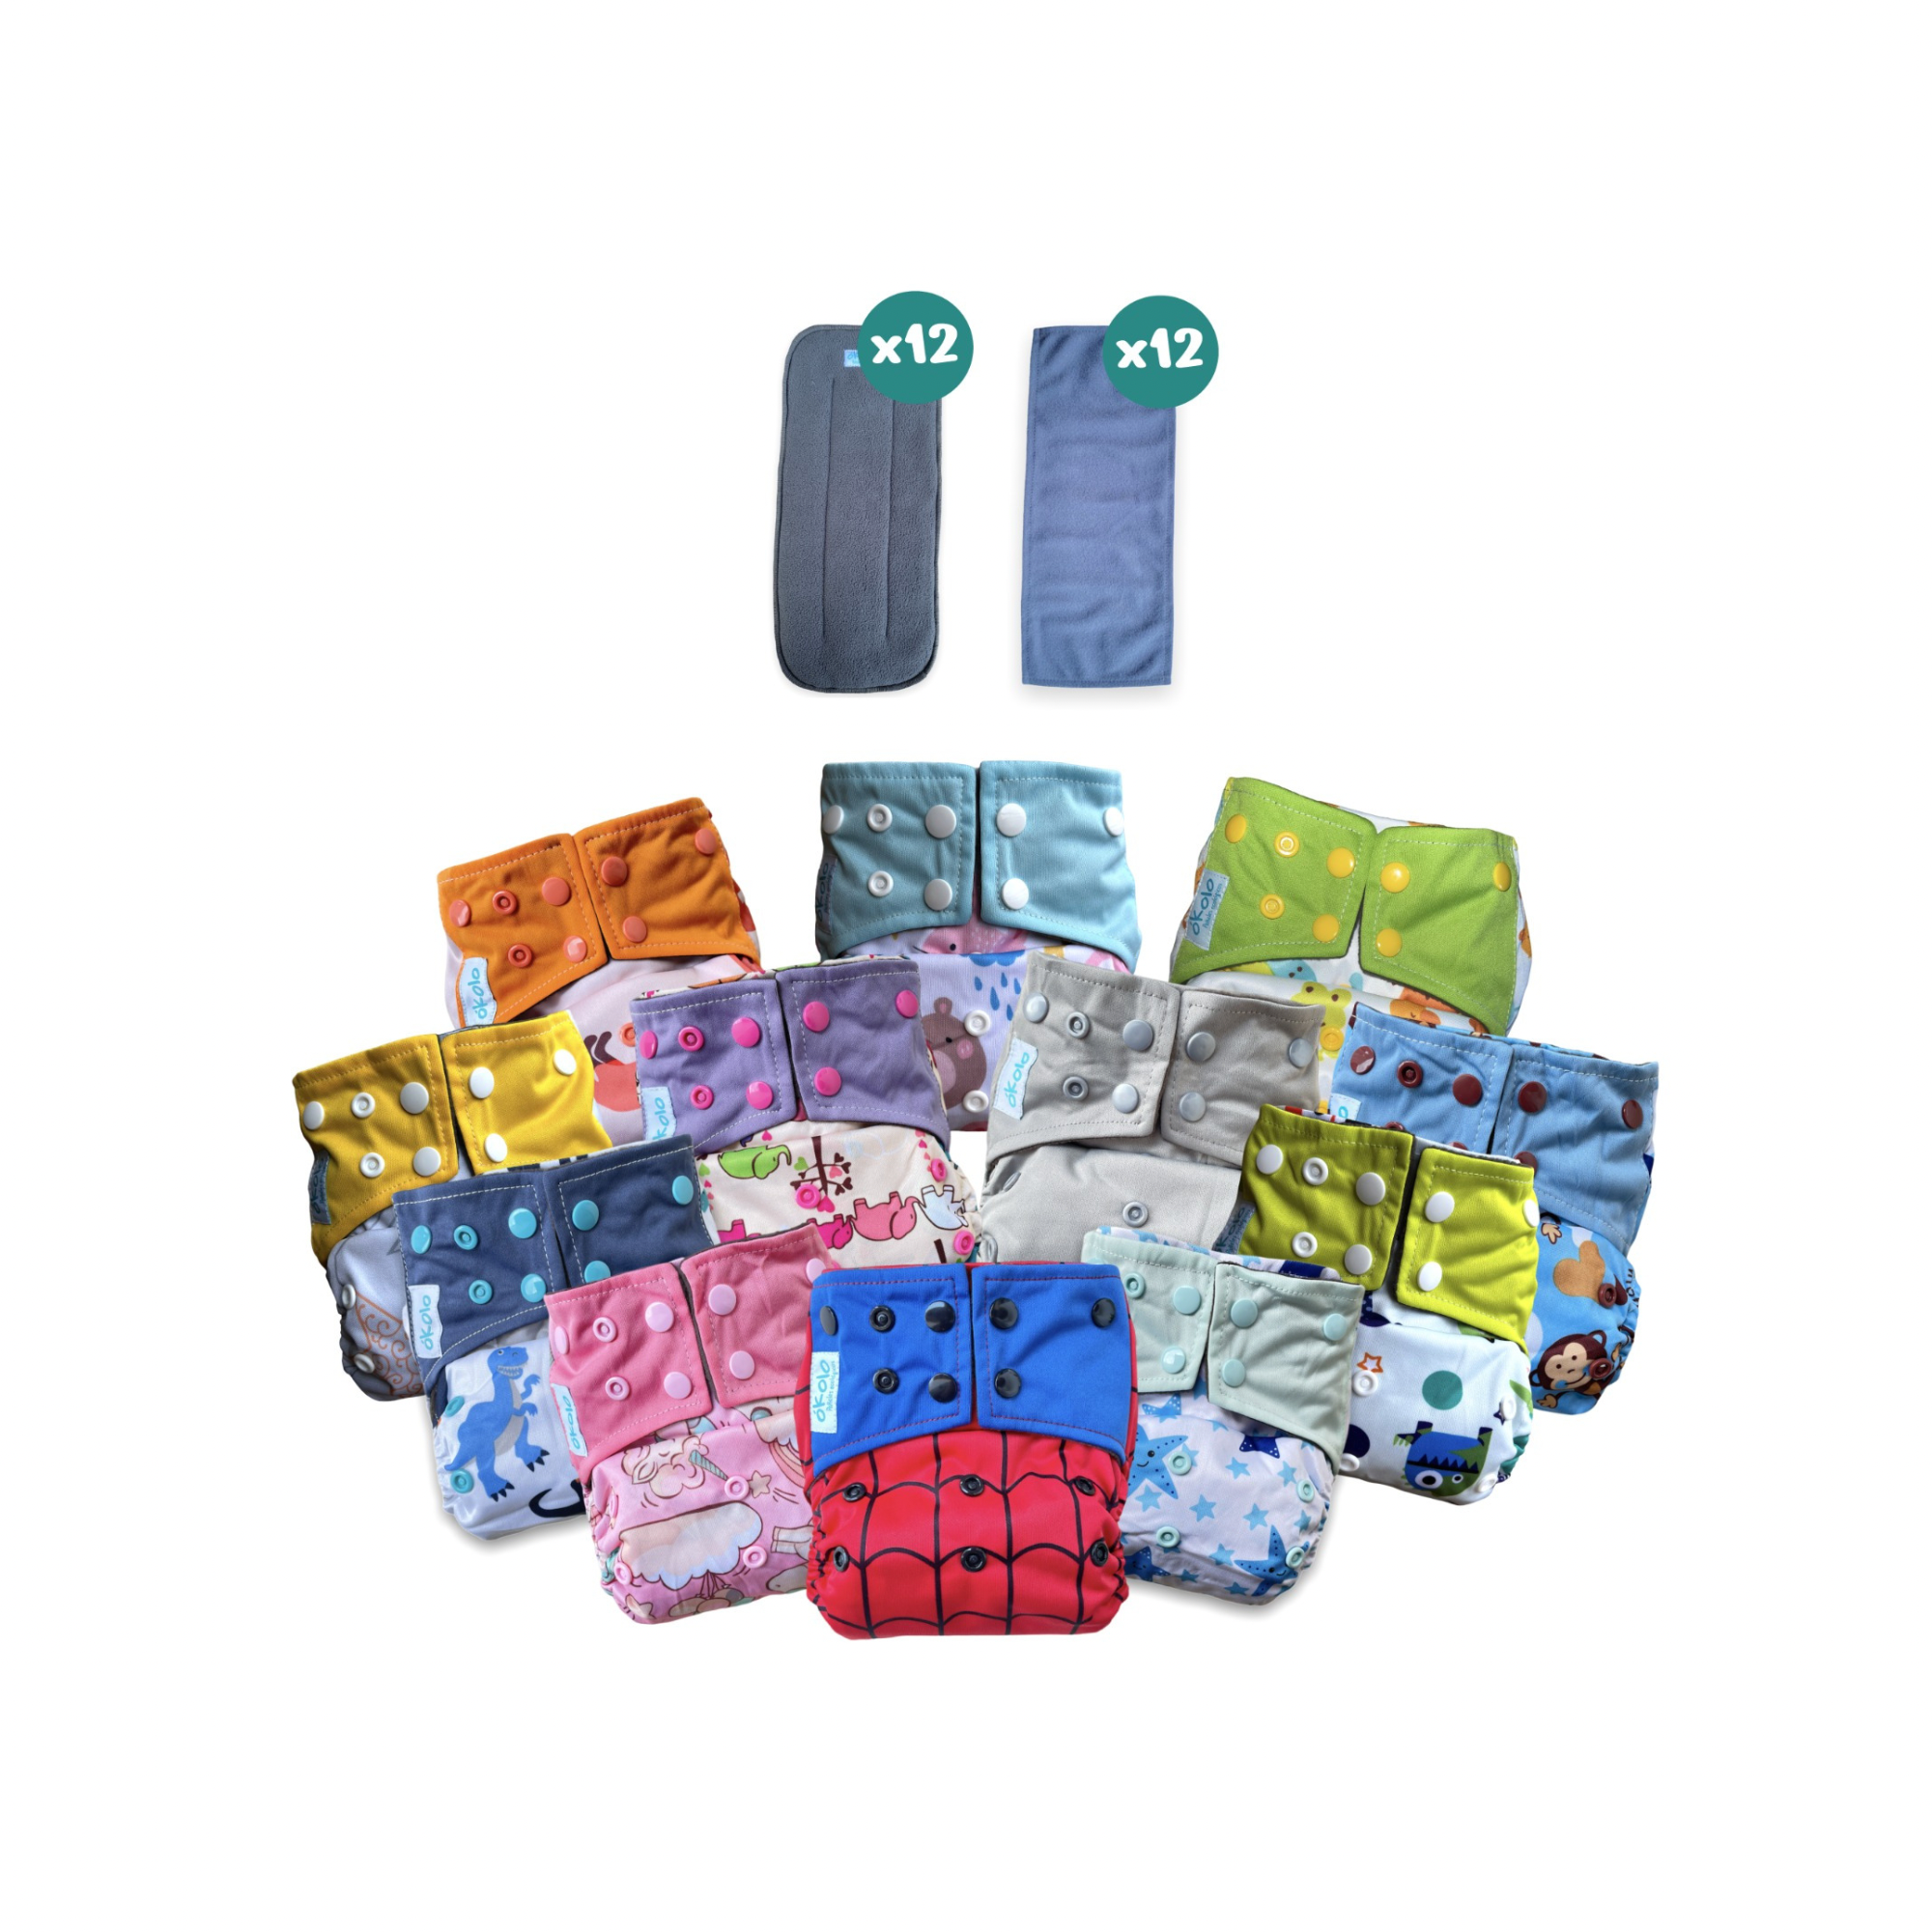 Combo Básico x12 Pañales Ecológicos para Bebés, 12 Ultra Absorbentes y 12 filtros reutilizables, Previenen la Pañalitis